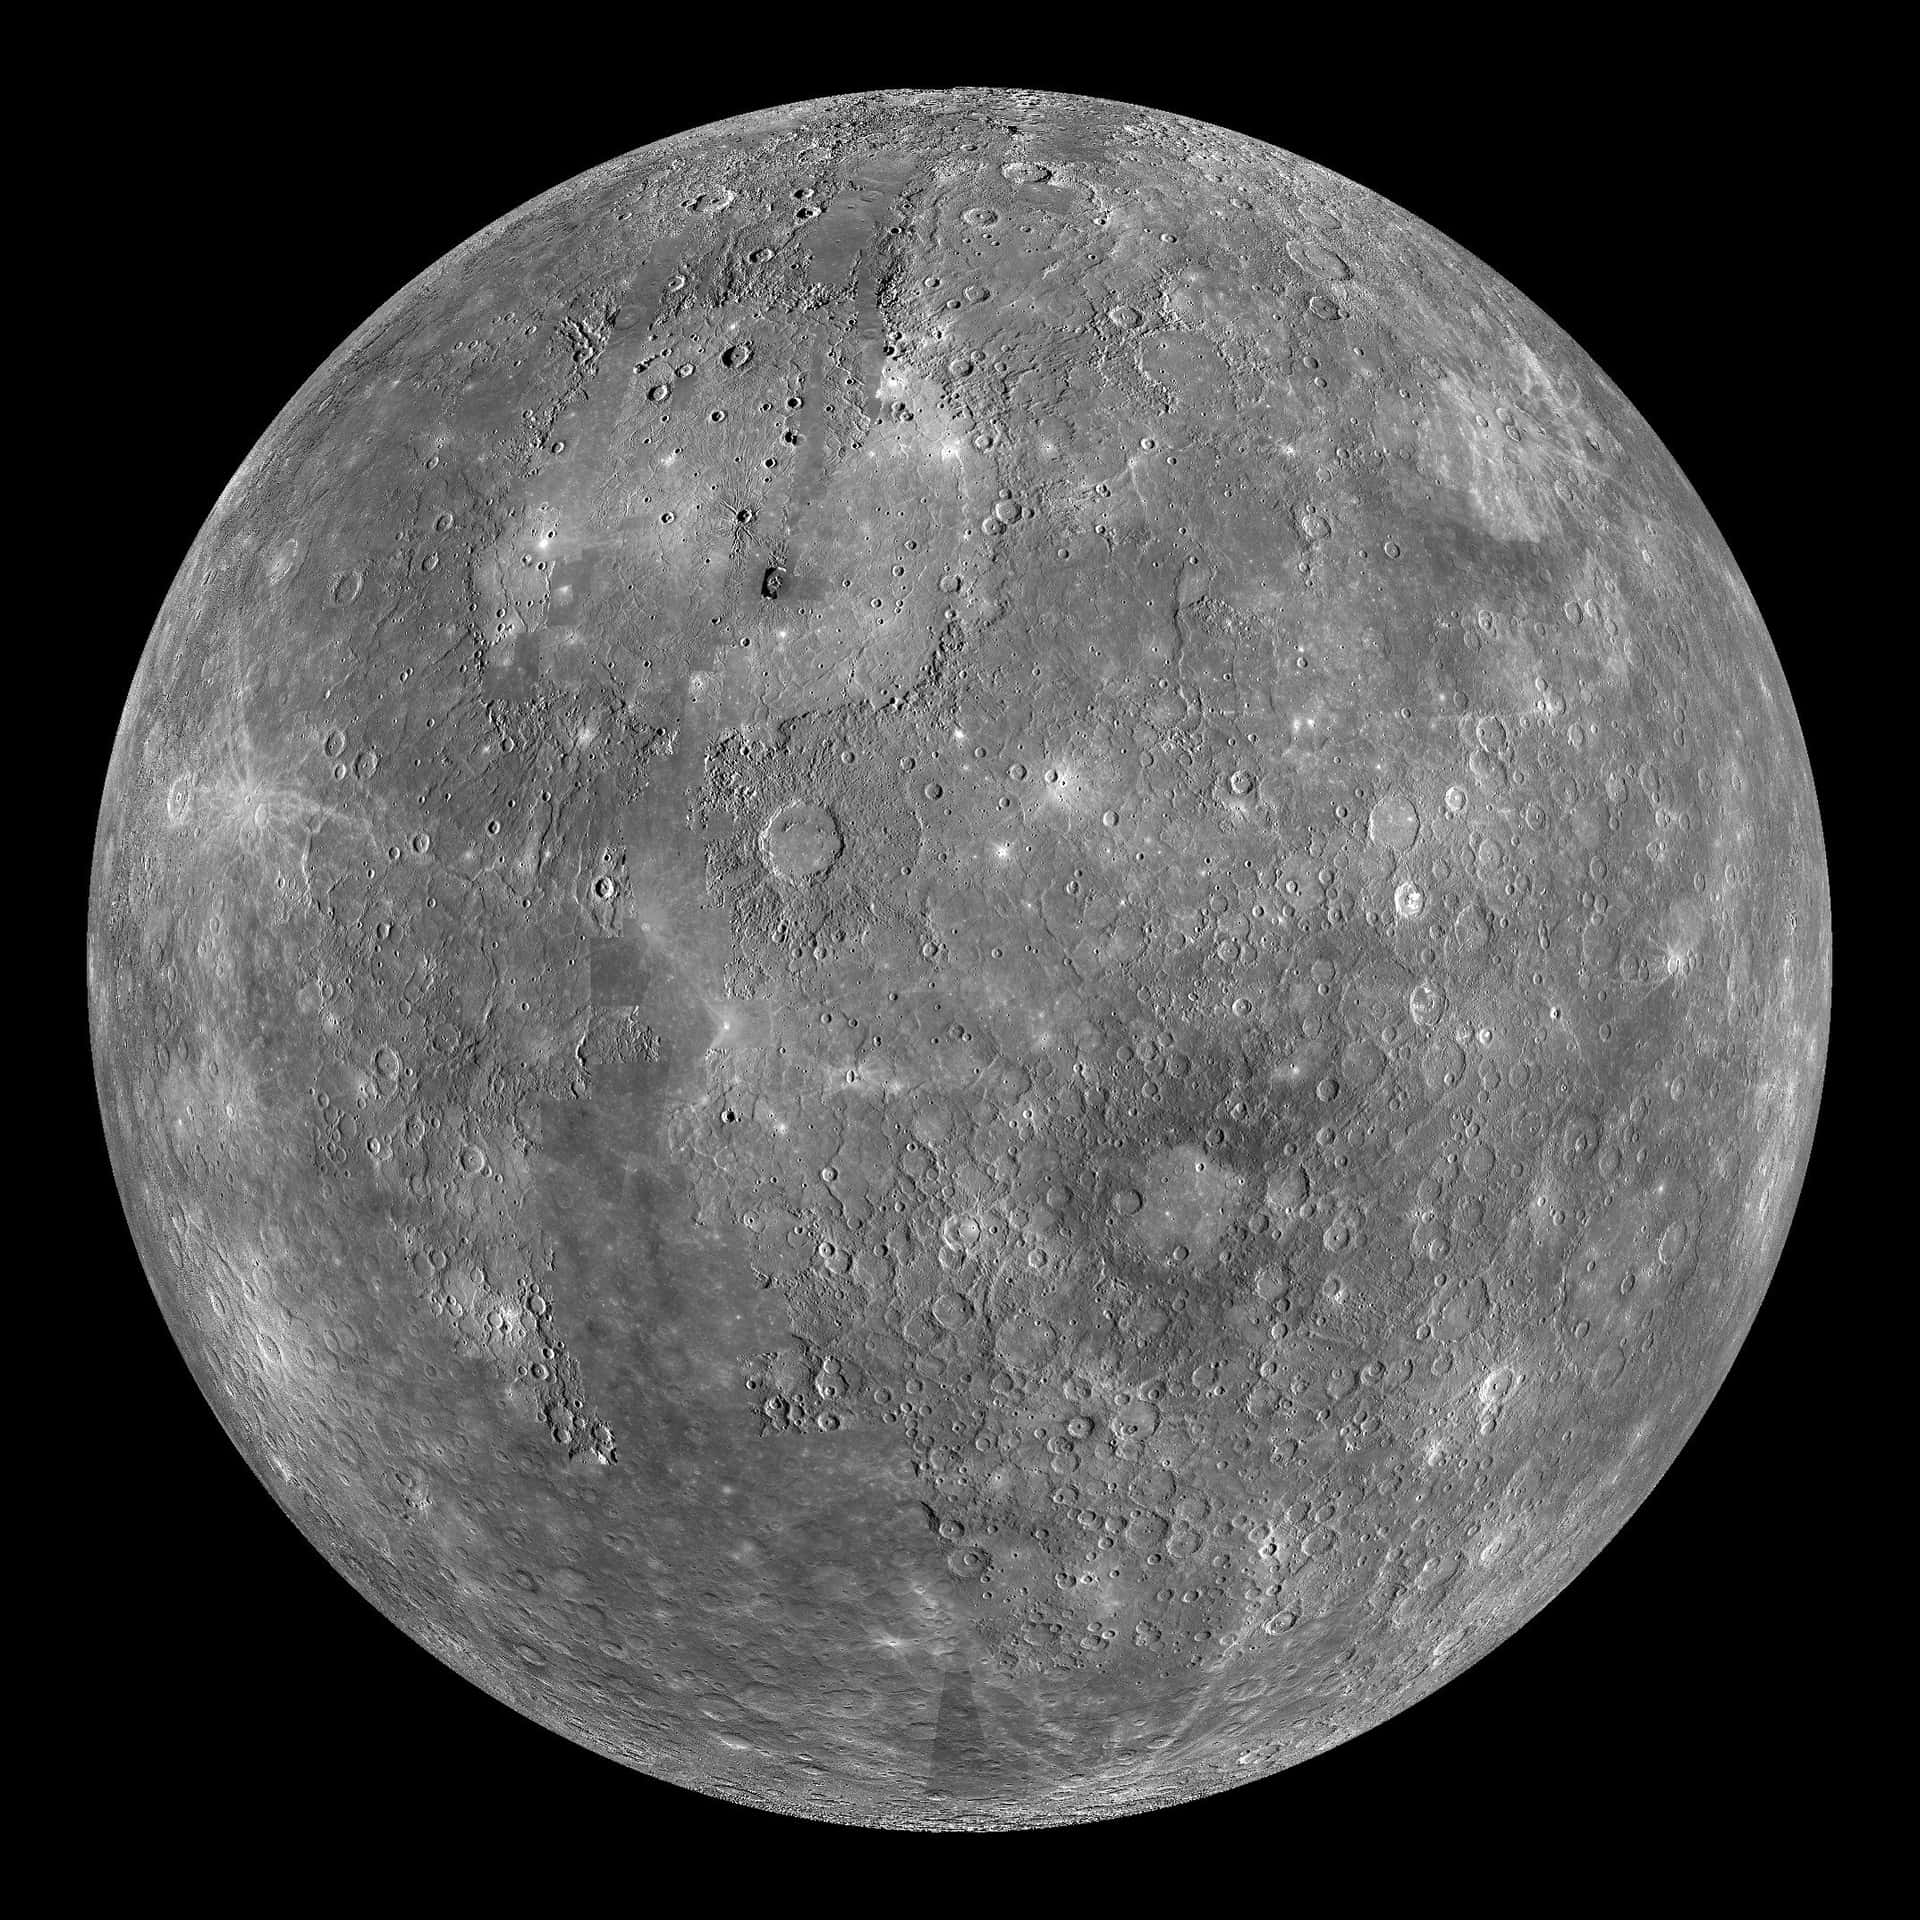 Questosfondo Con Mercurio È Totalmente Fuori Da Questo Mondo